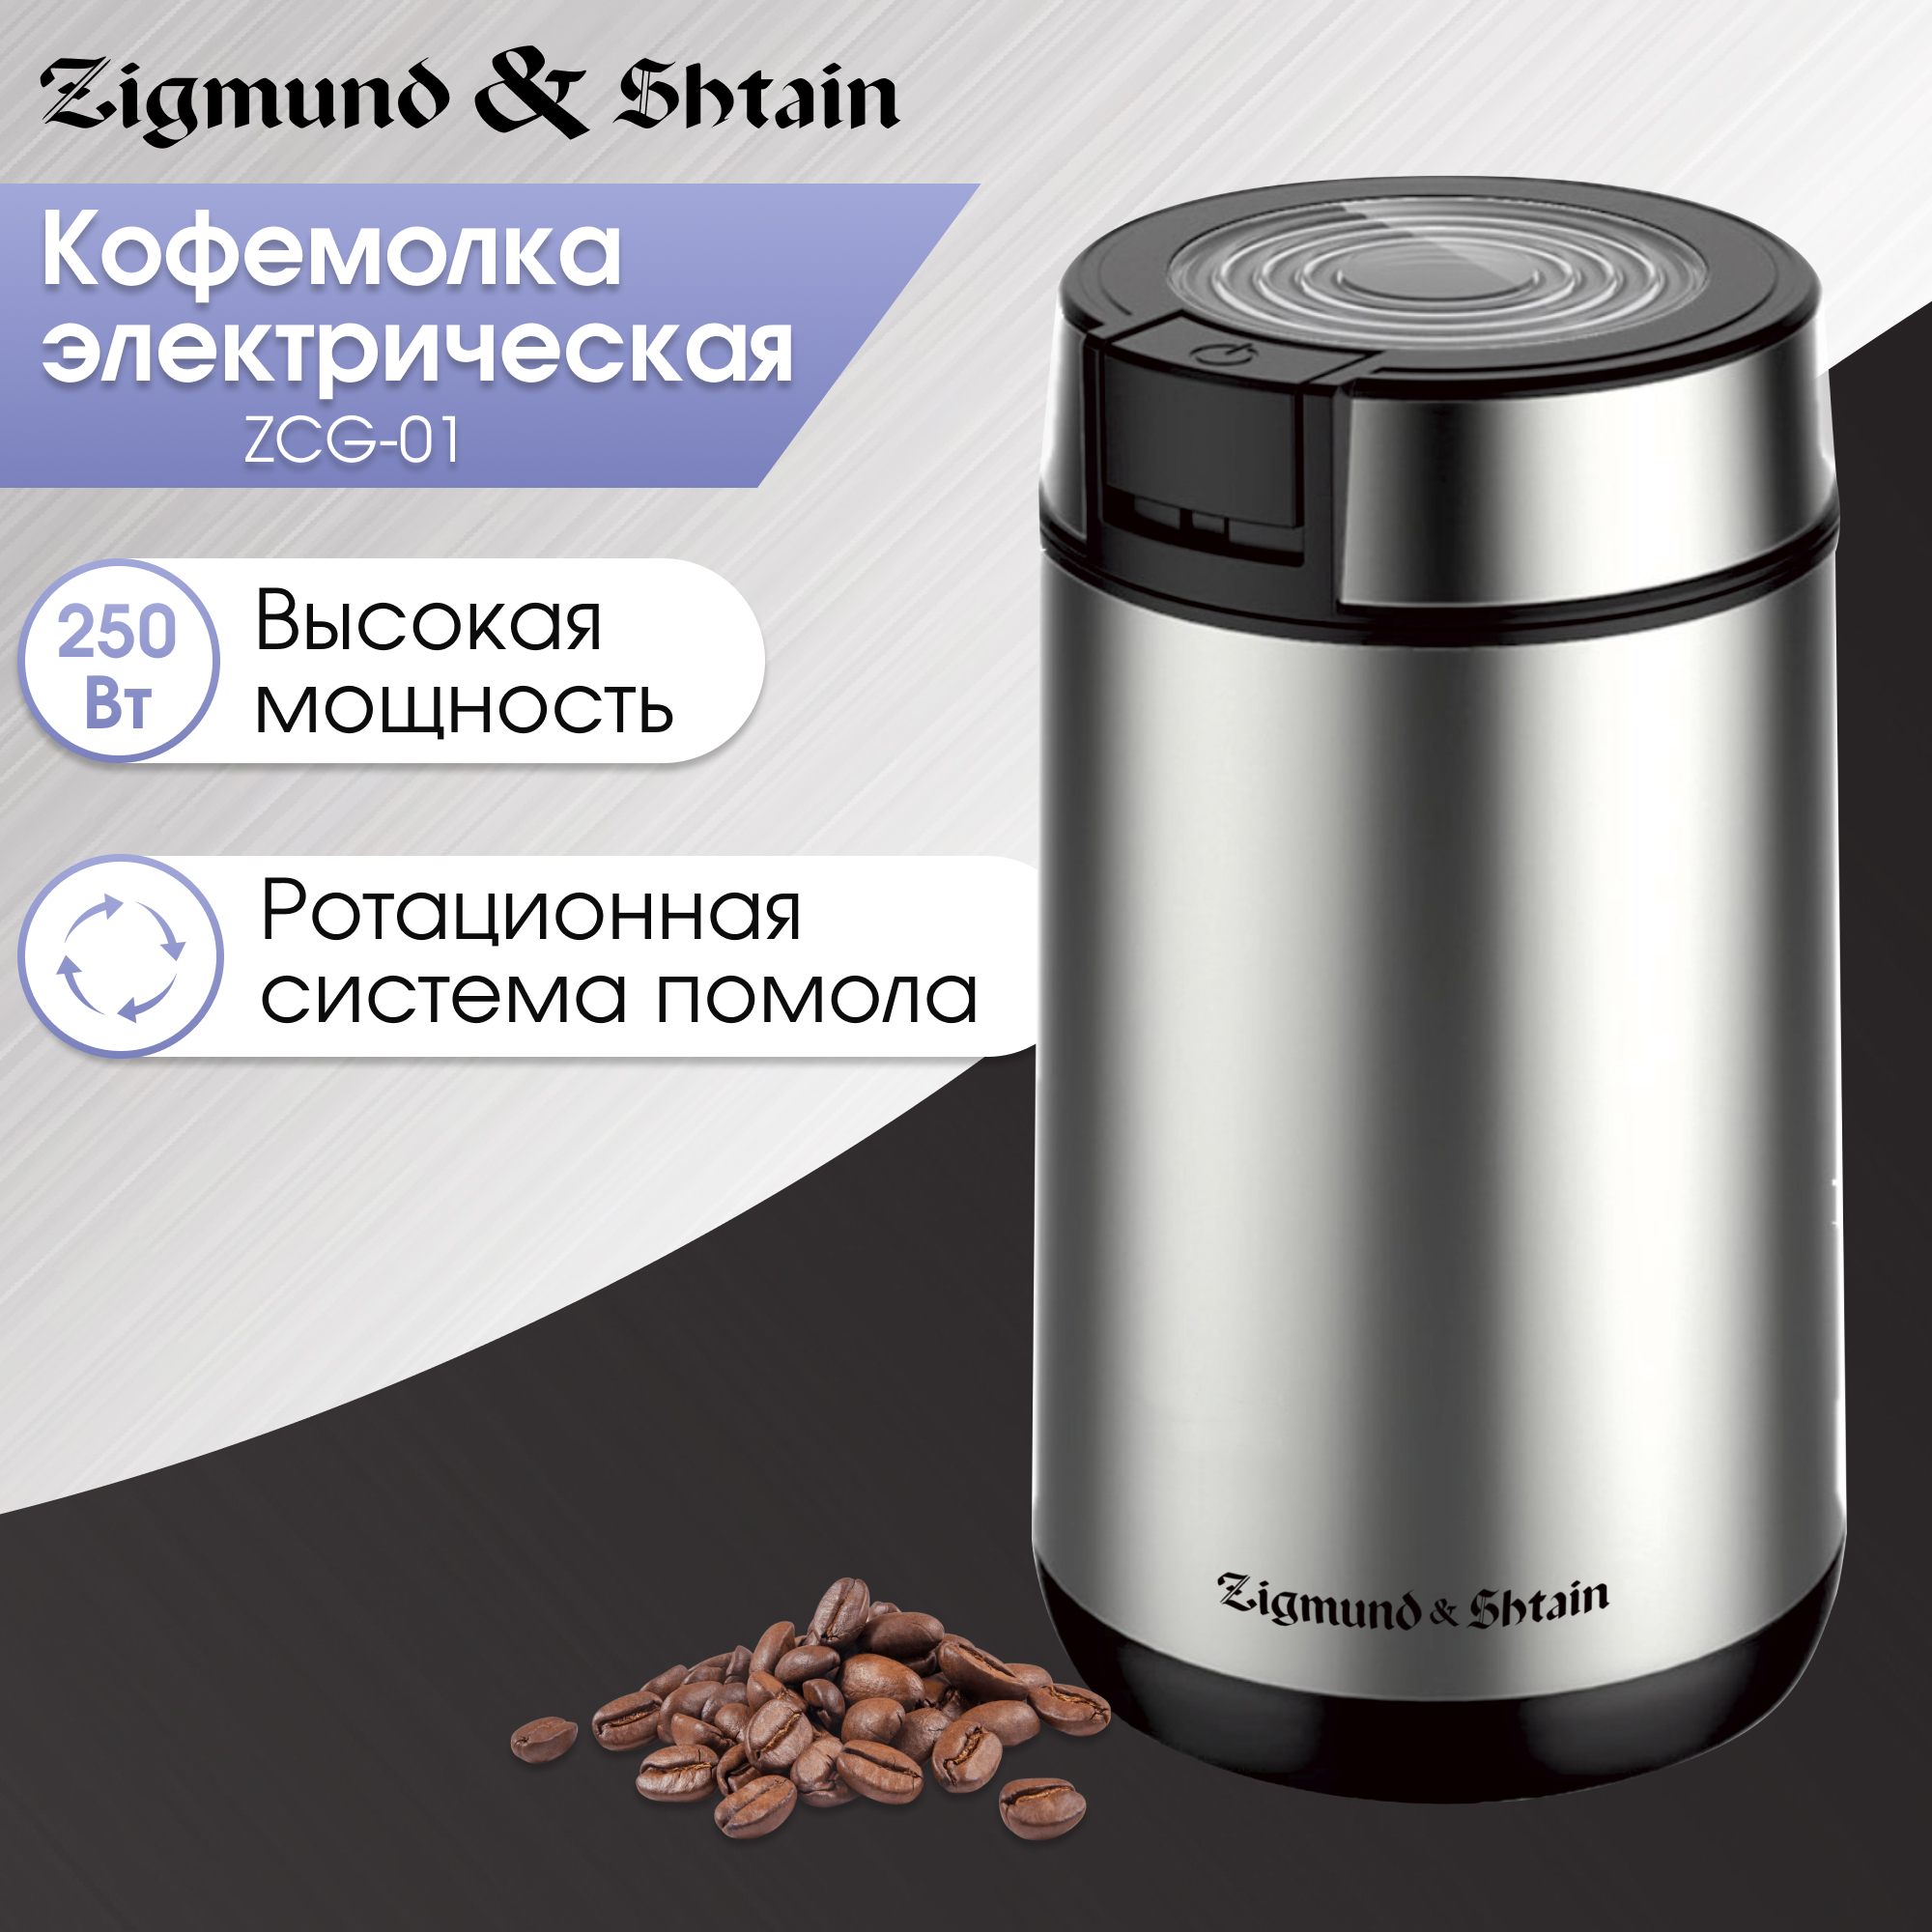 Кофемолка Zigmund & Shtain ZCG-01 серебристый, серый кофемолка viconte vc 3115 электрическая ножевая 600 вт 100 г серебристо чёрная